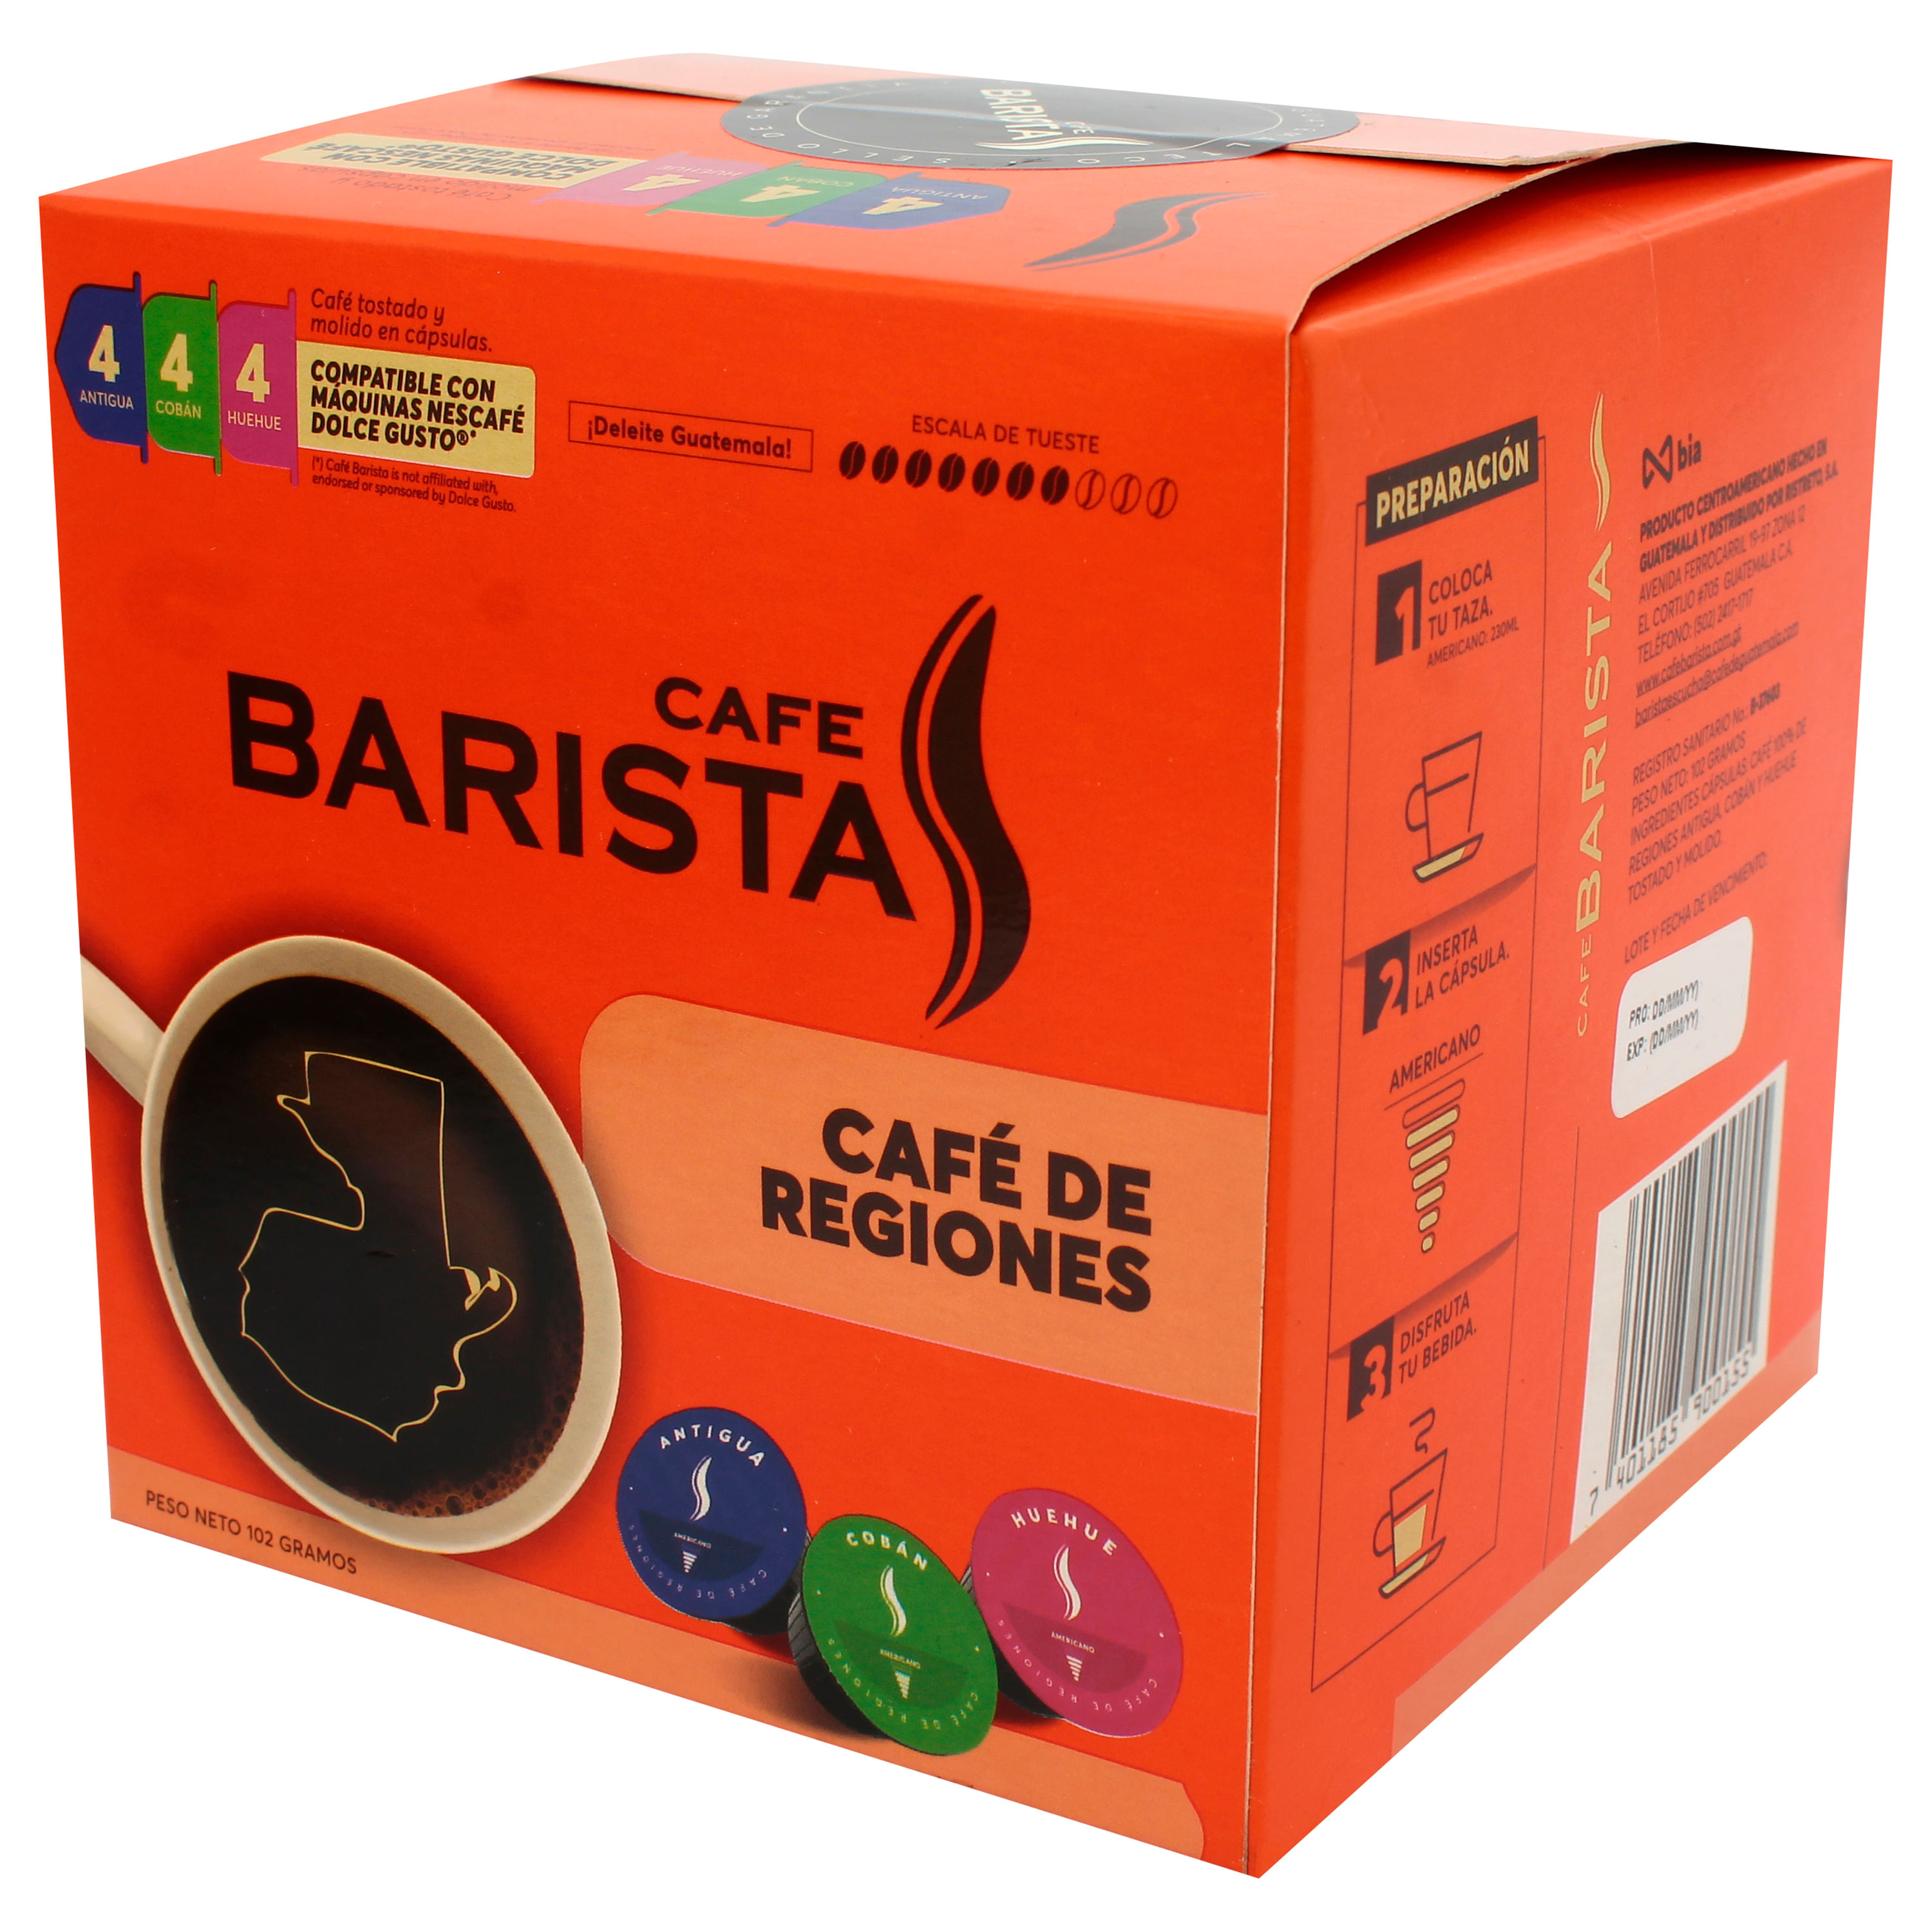 Comprar Cápsula De Café Barista Regiones - 102gr